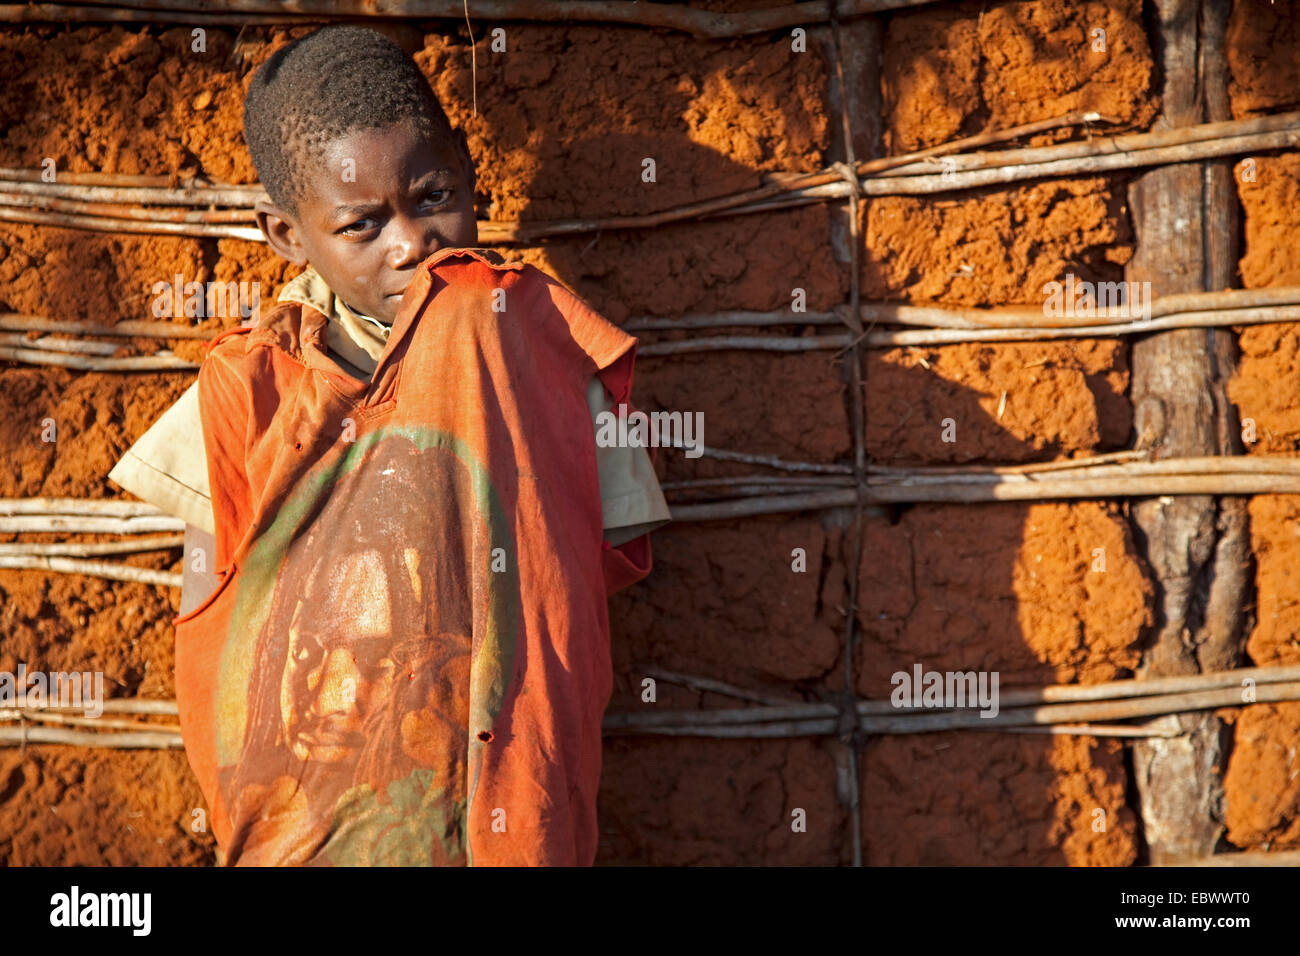 Ragazzo accanto a un umile casa di fango parete indossando un usurata T-shirt con il simbolo ritratto del movimento Rastafari su di esso, Burundi, vicino al Parco Nazionale de la Ruvubu, Cankuzo Foto Stock